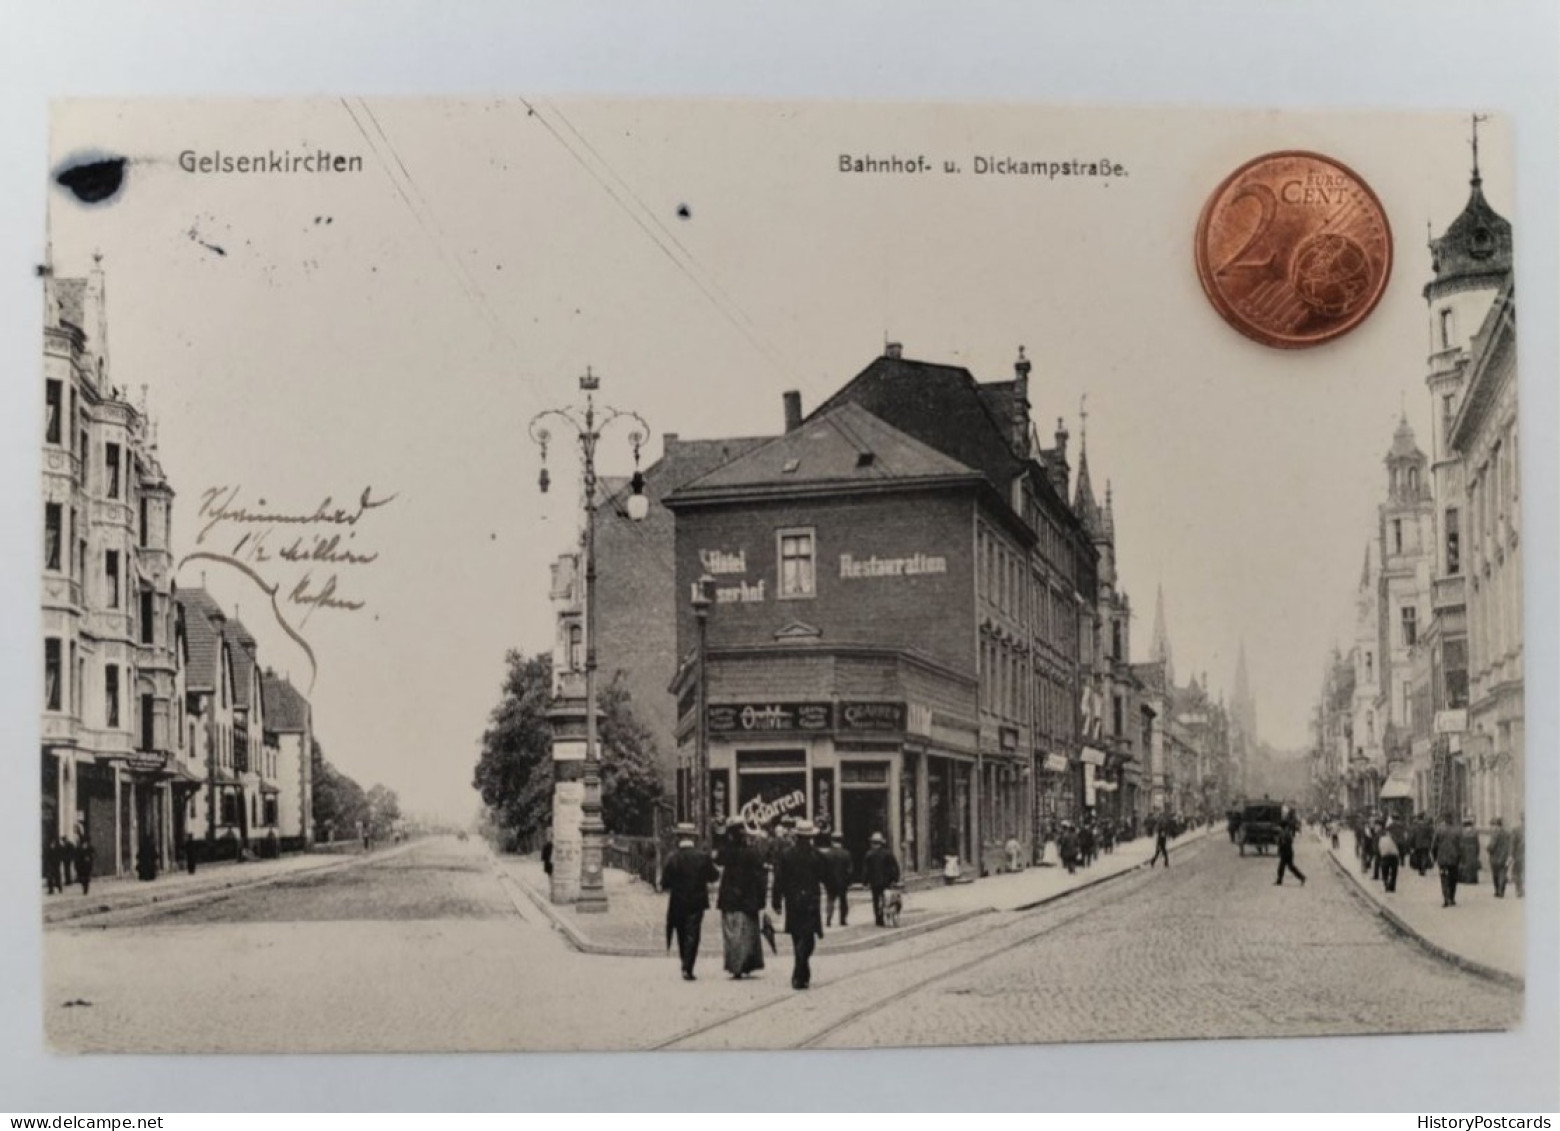 Gelsenkirchen, Bahnhof-u. Dickampstraße, Hotel Kaiserhof, 1905 - Gelsenkirchen